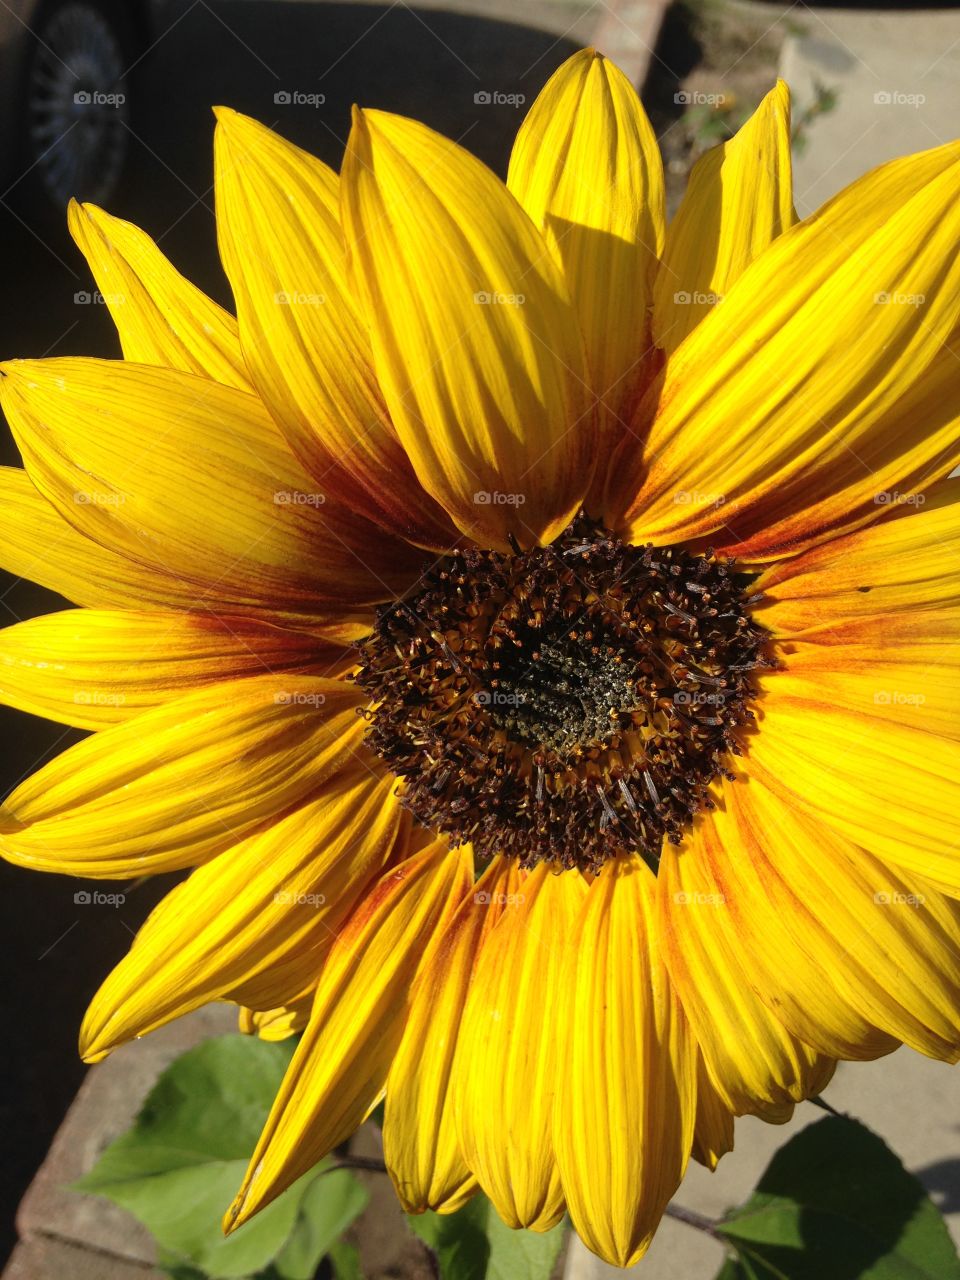 Cheery Sunflower